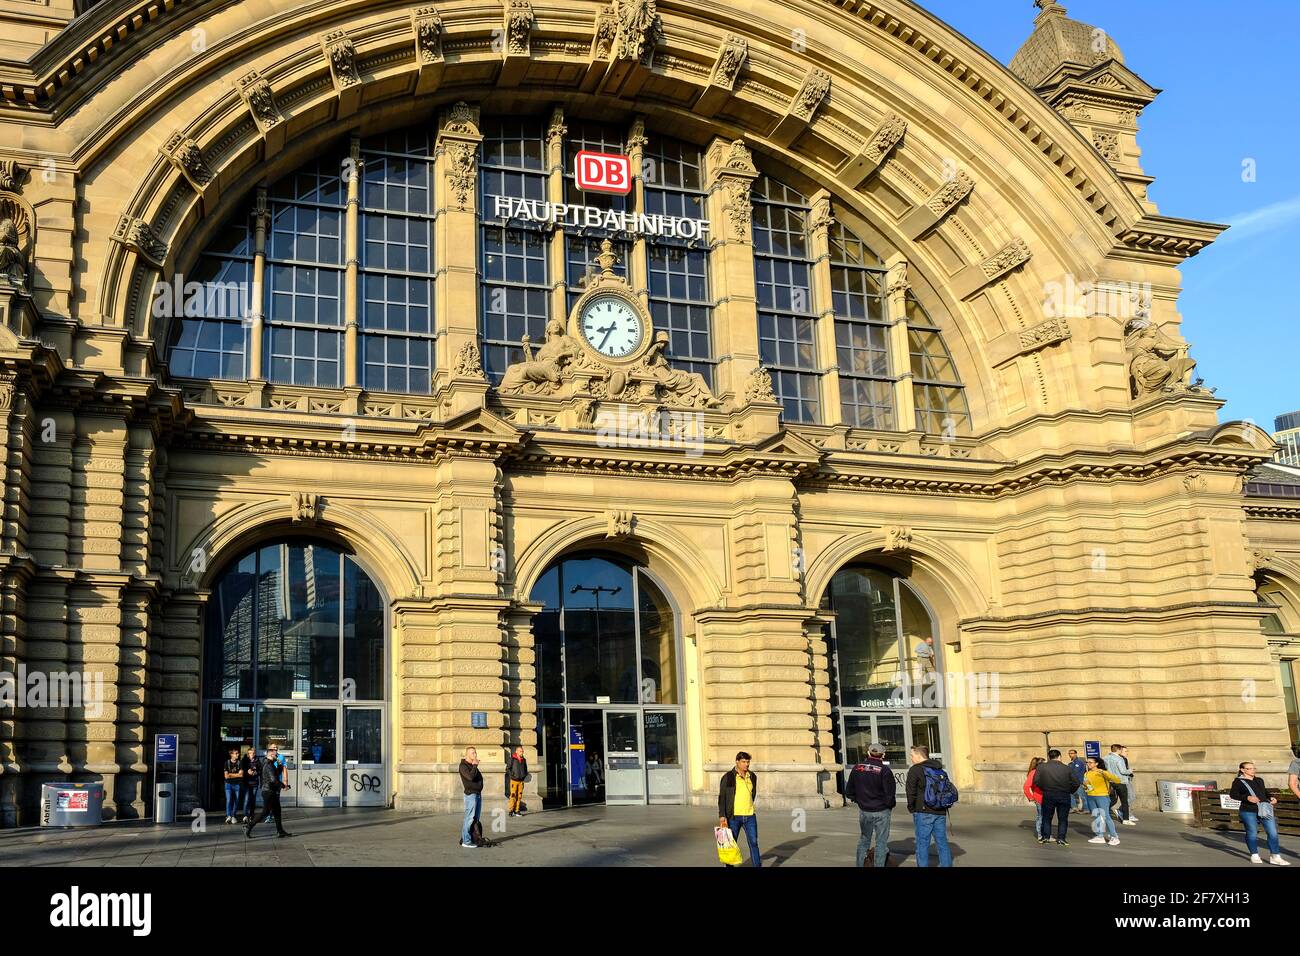 14.09.2019, Frankfurt am Main, Hessen, Deutschland - Haupteingang des Frankfurter Hauptbahnhofs Stock Photo